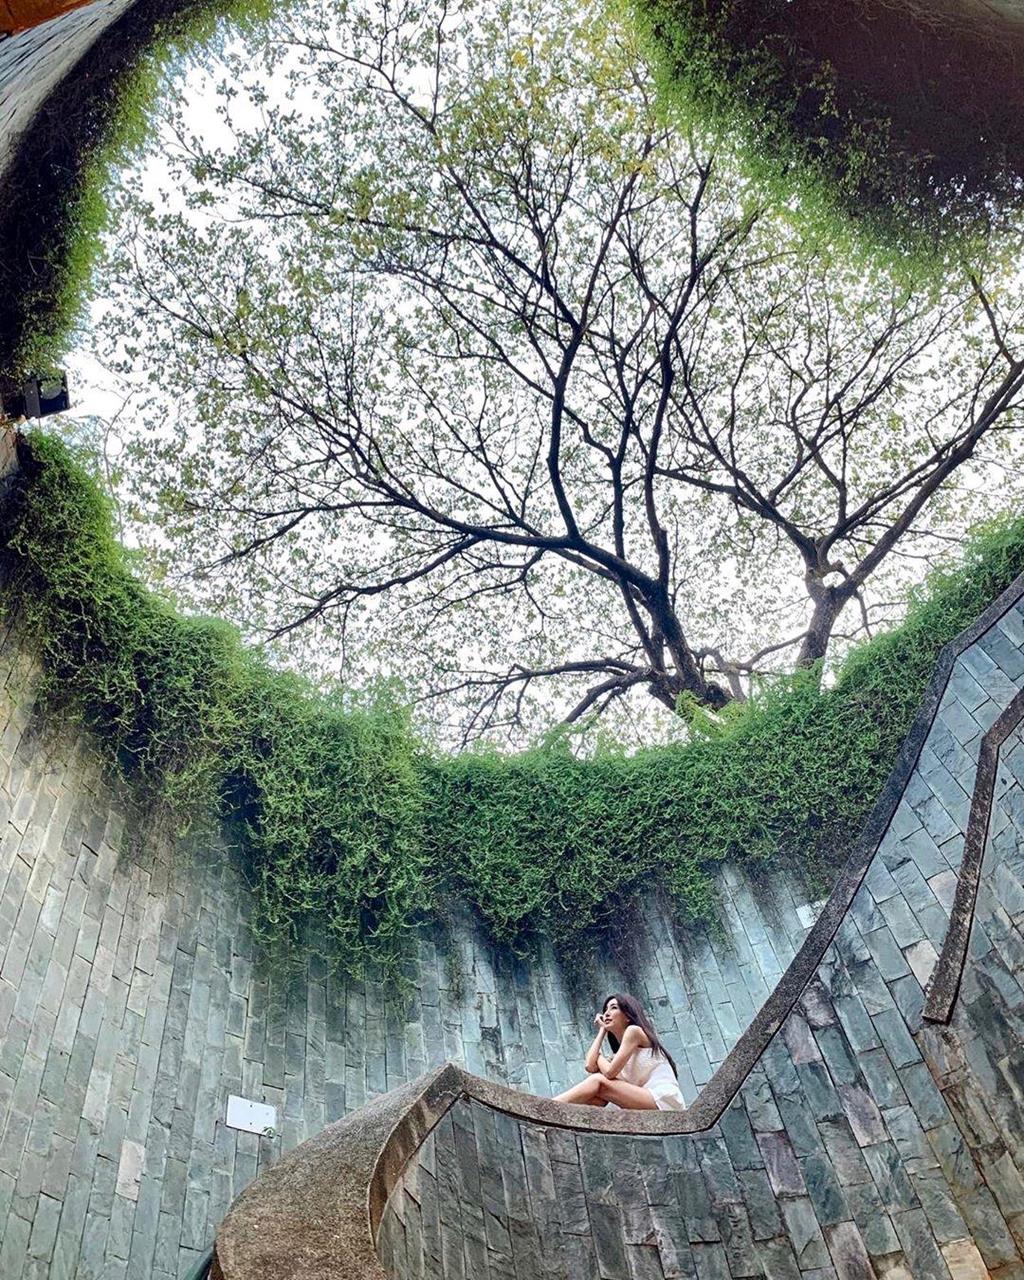 Công viên Fort Canning, góc sống ảo mới ở Singapore